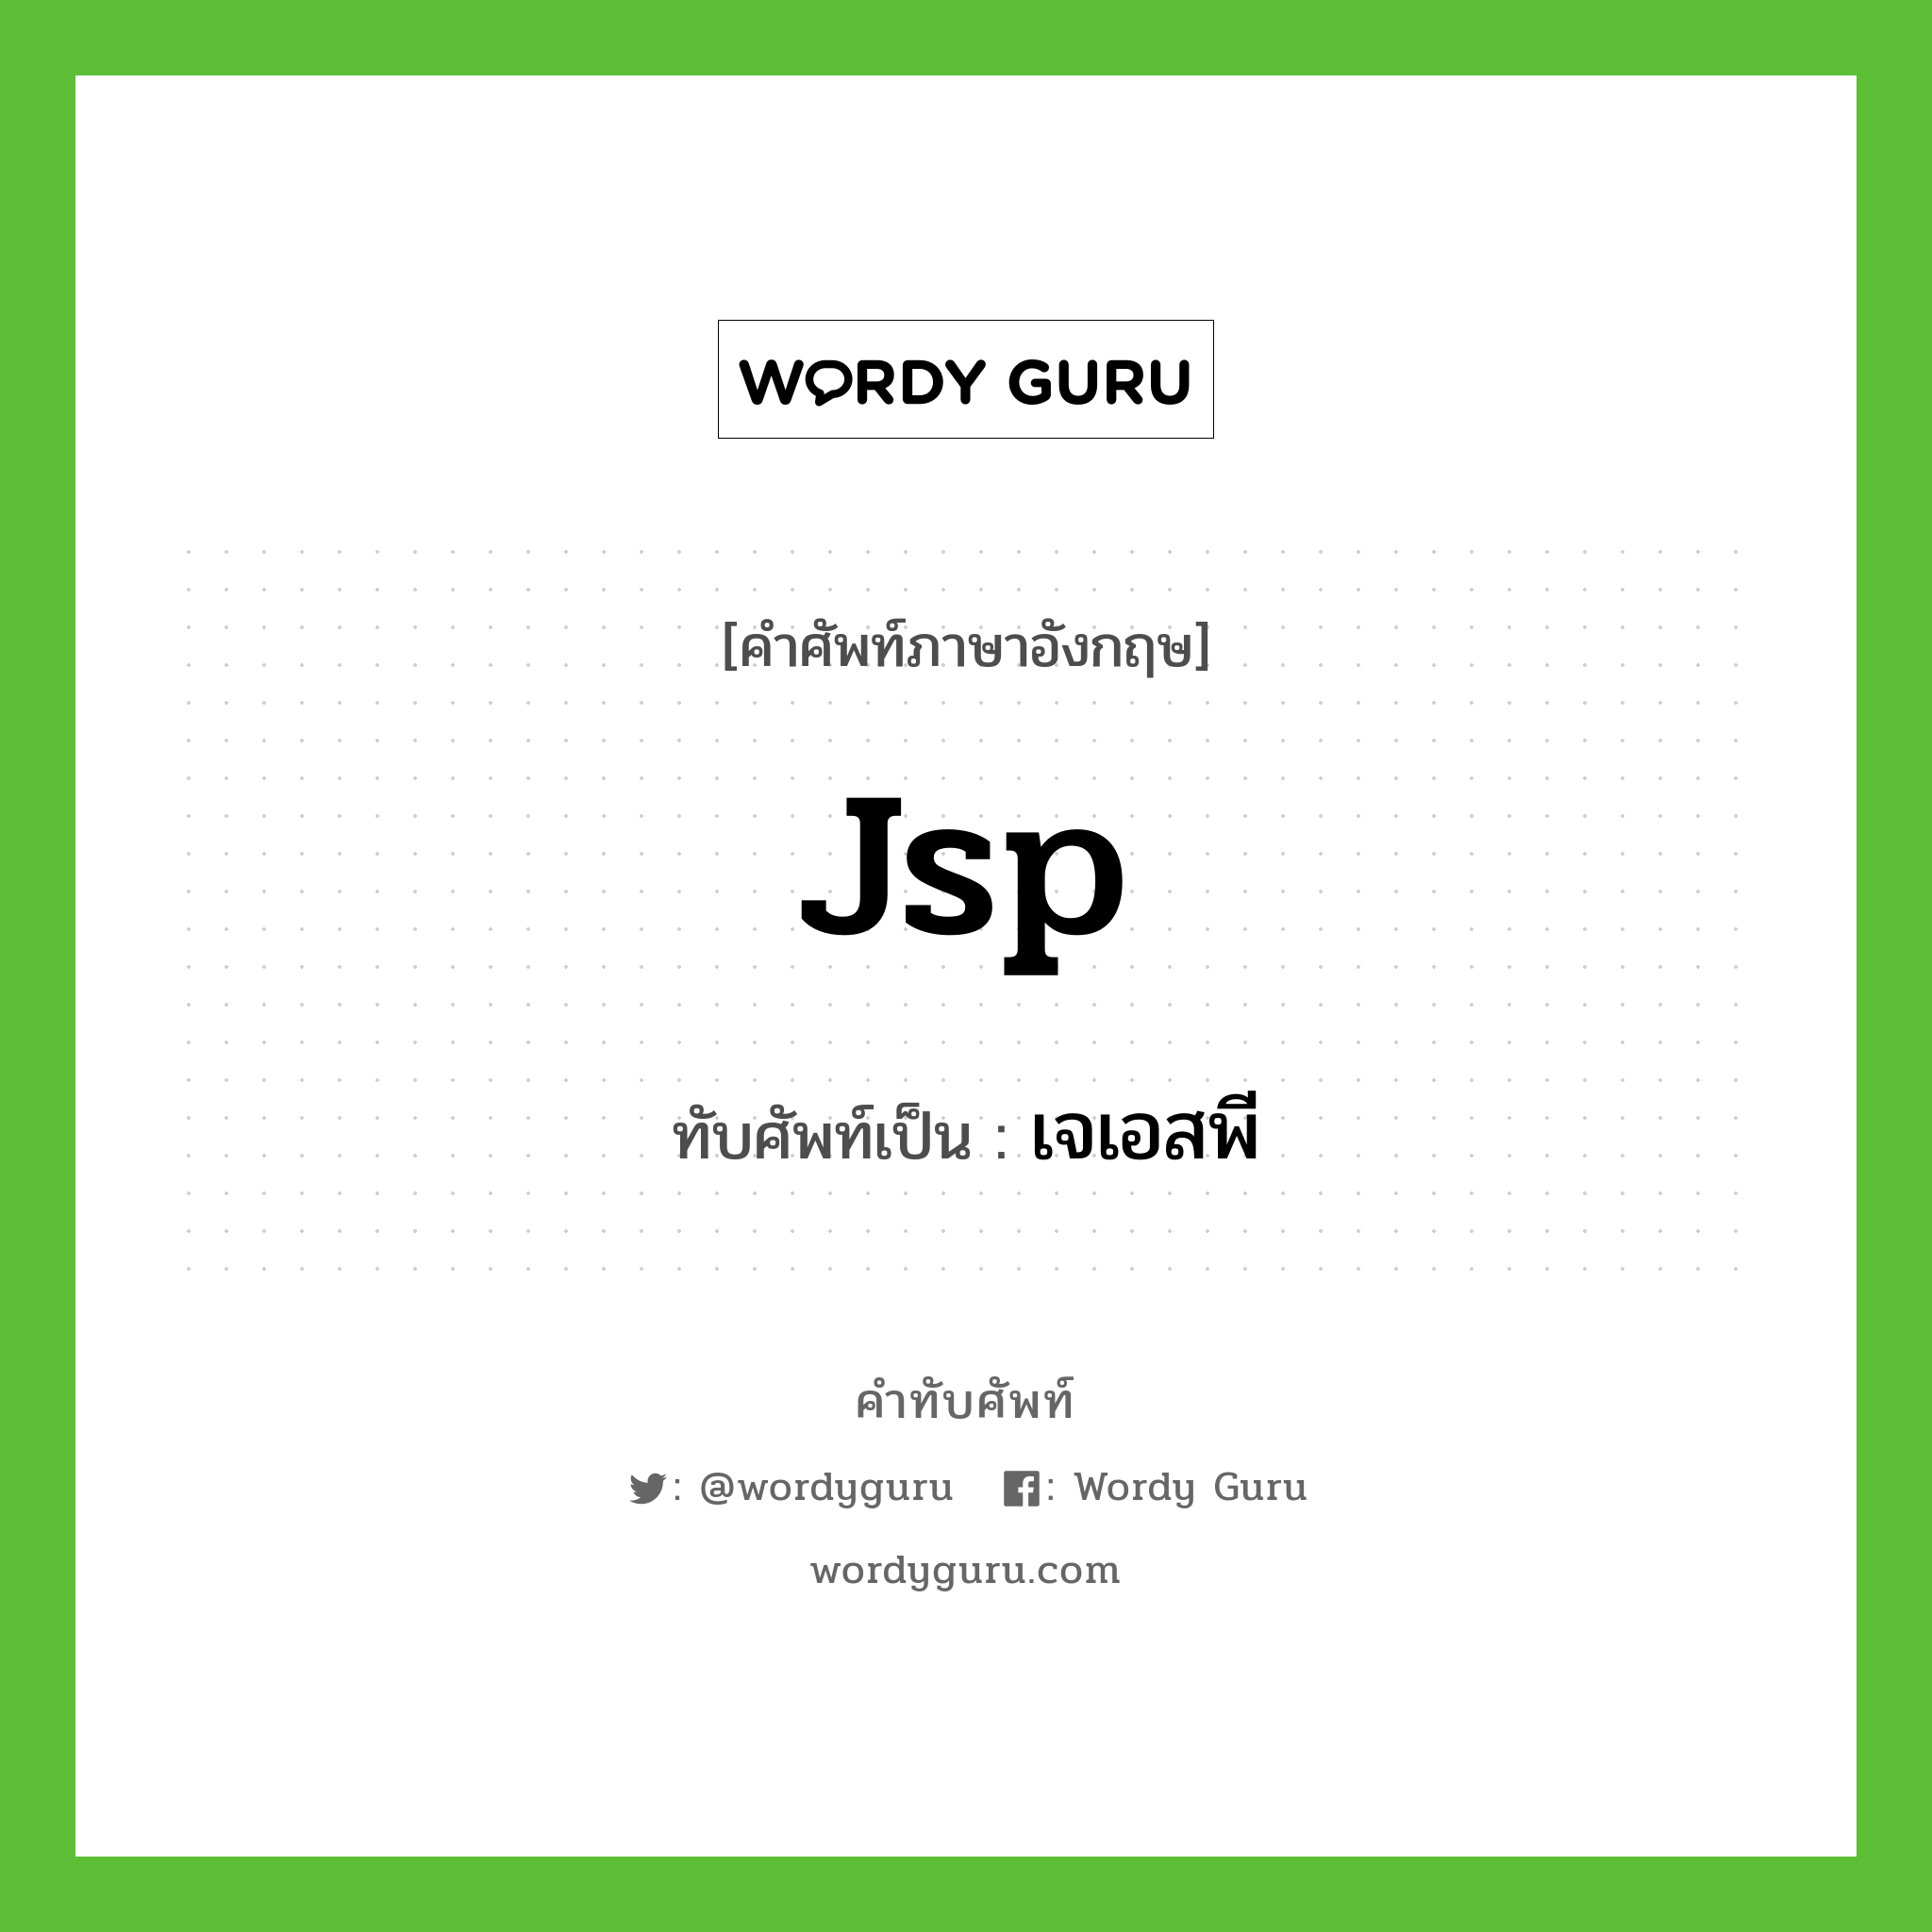 Jsp เขียนเป็นคำไทยว่าอะไร?, คำศัพท์ภาษาอังกฤษ Jsp ทับศัพท์เป็น เจเอสพี